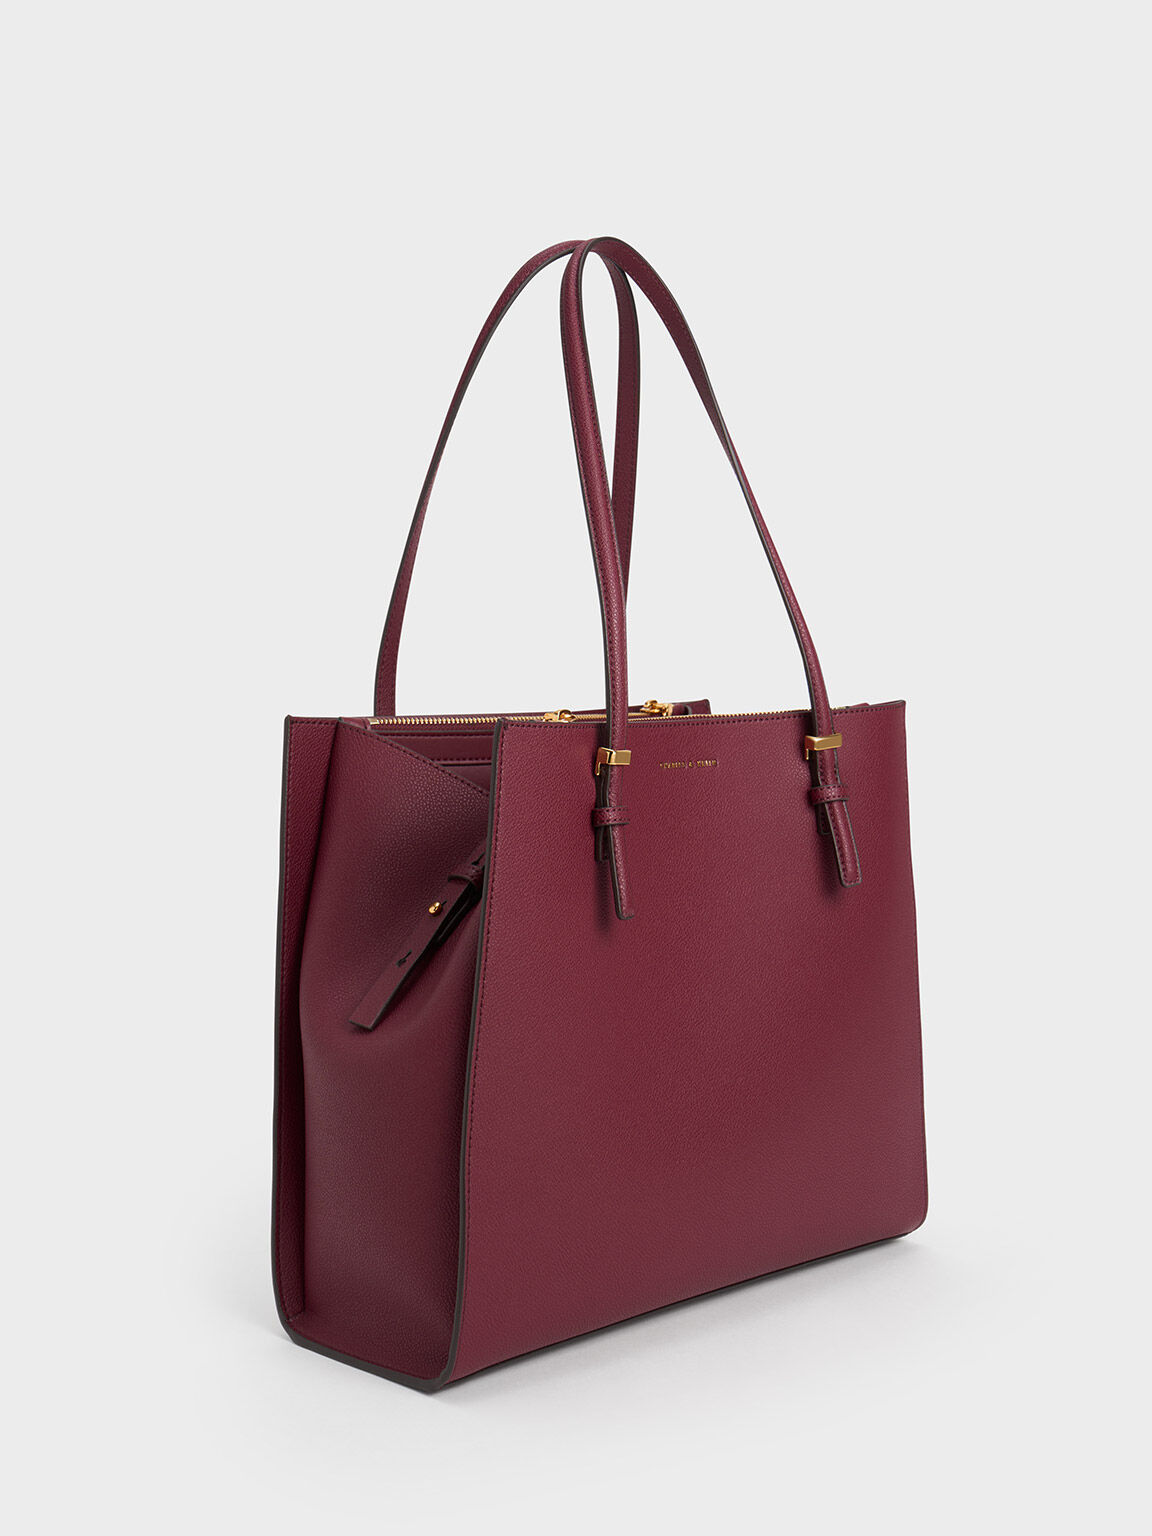 Maroon Handbags Bags - Buy Maroon Handbags Bags online in India